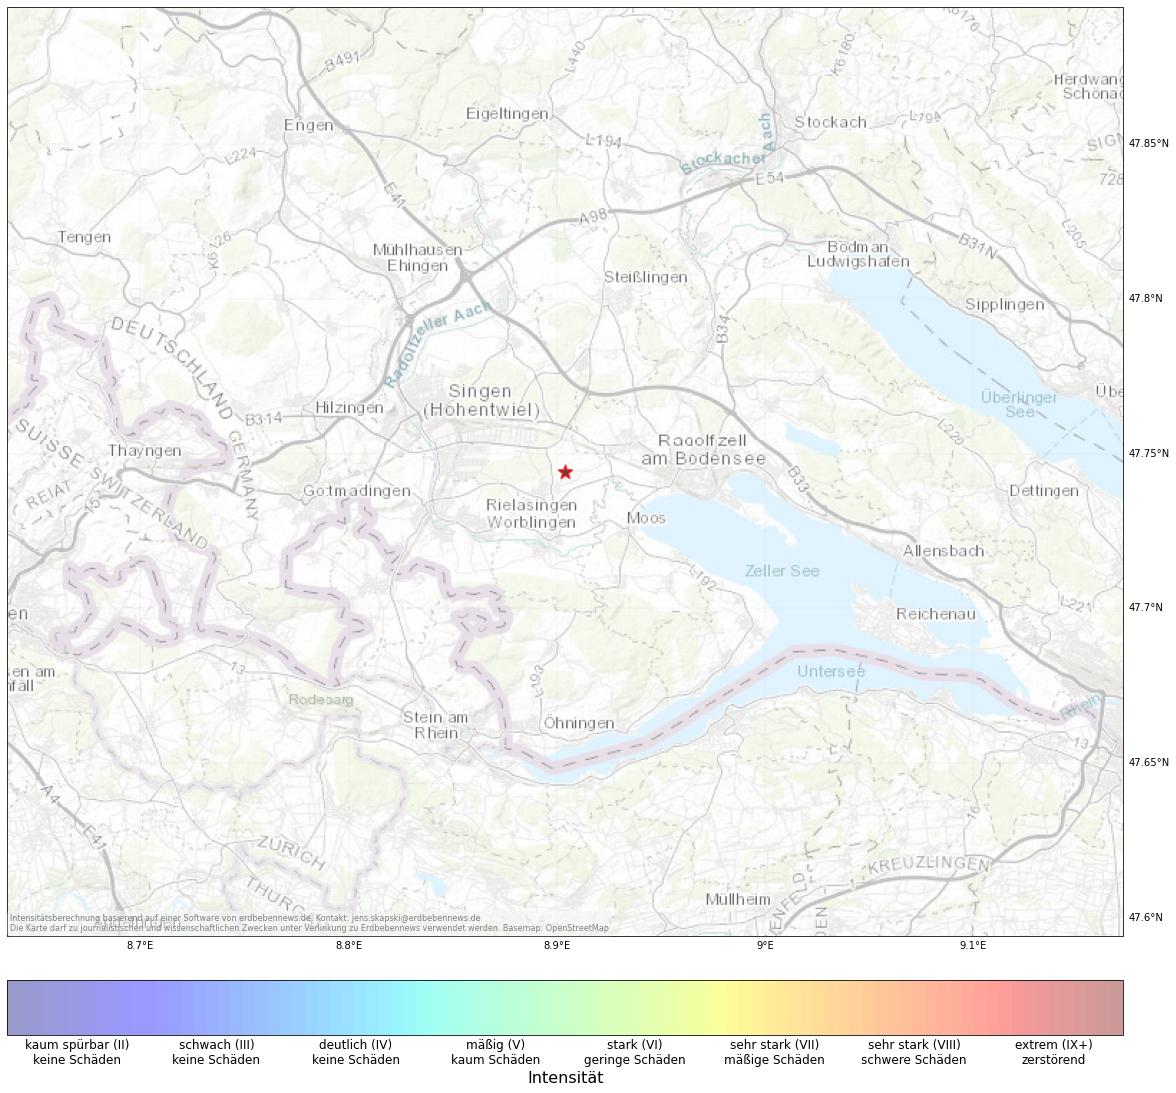 Berechnete Intensität (ShakeMap) des Erdbebens der Stärke 1.6 am 30. October, 00:02 in Deutschland